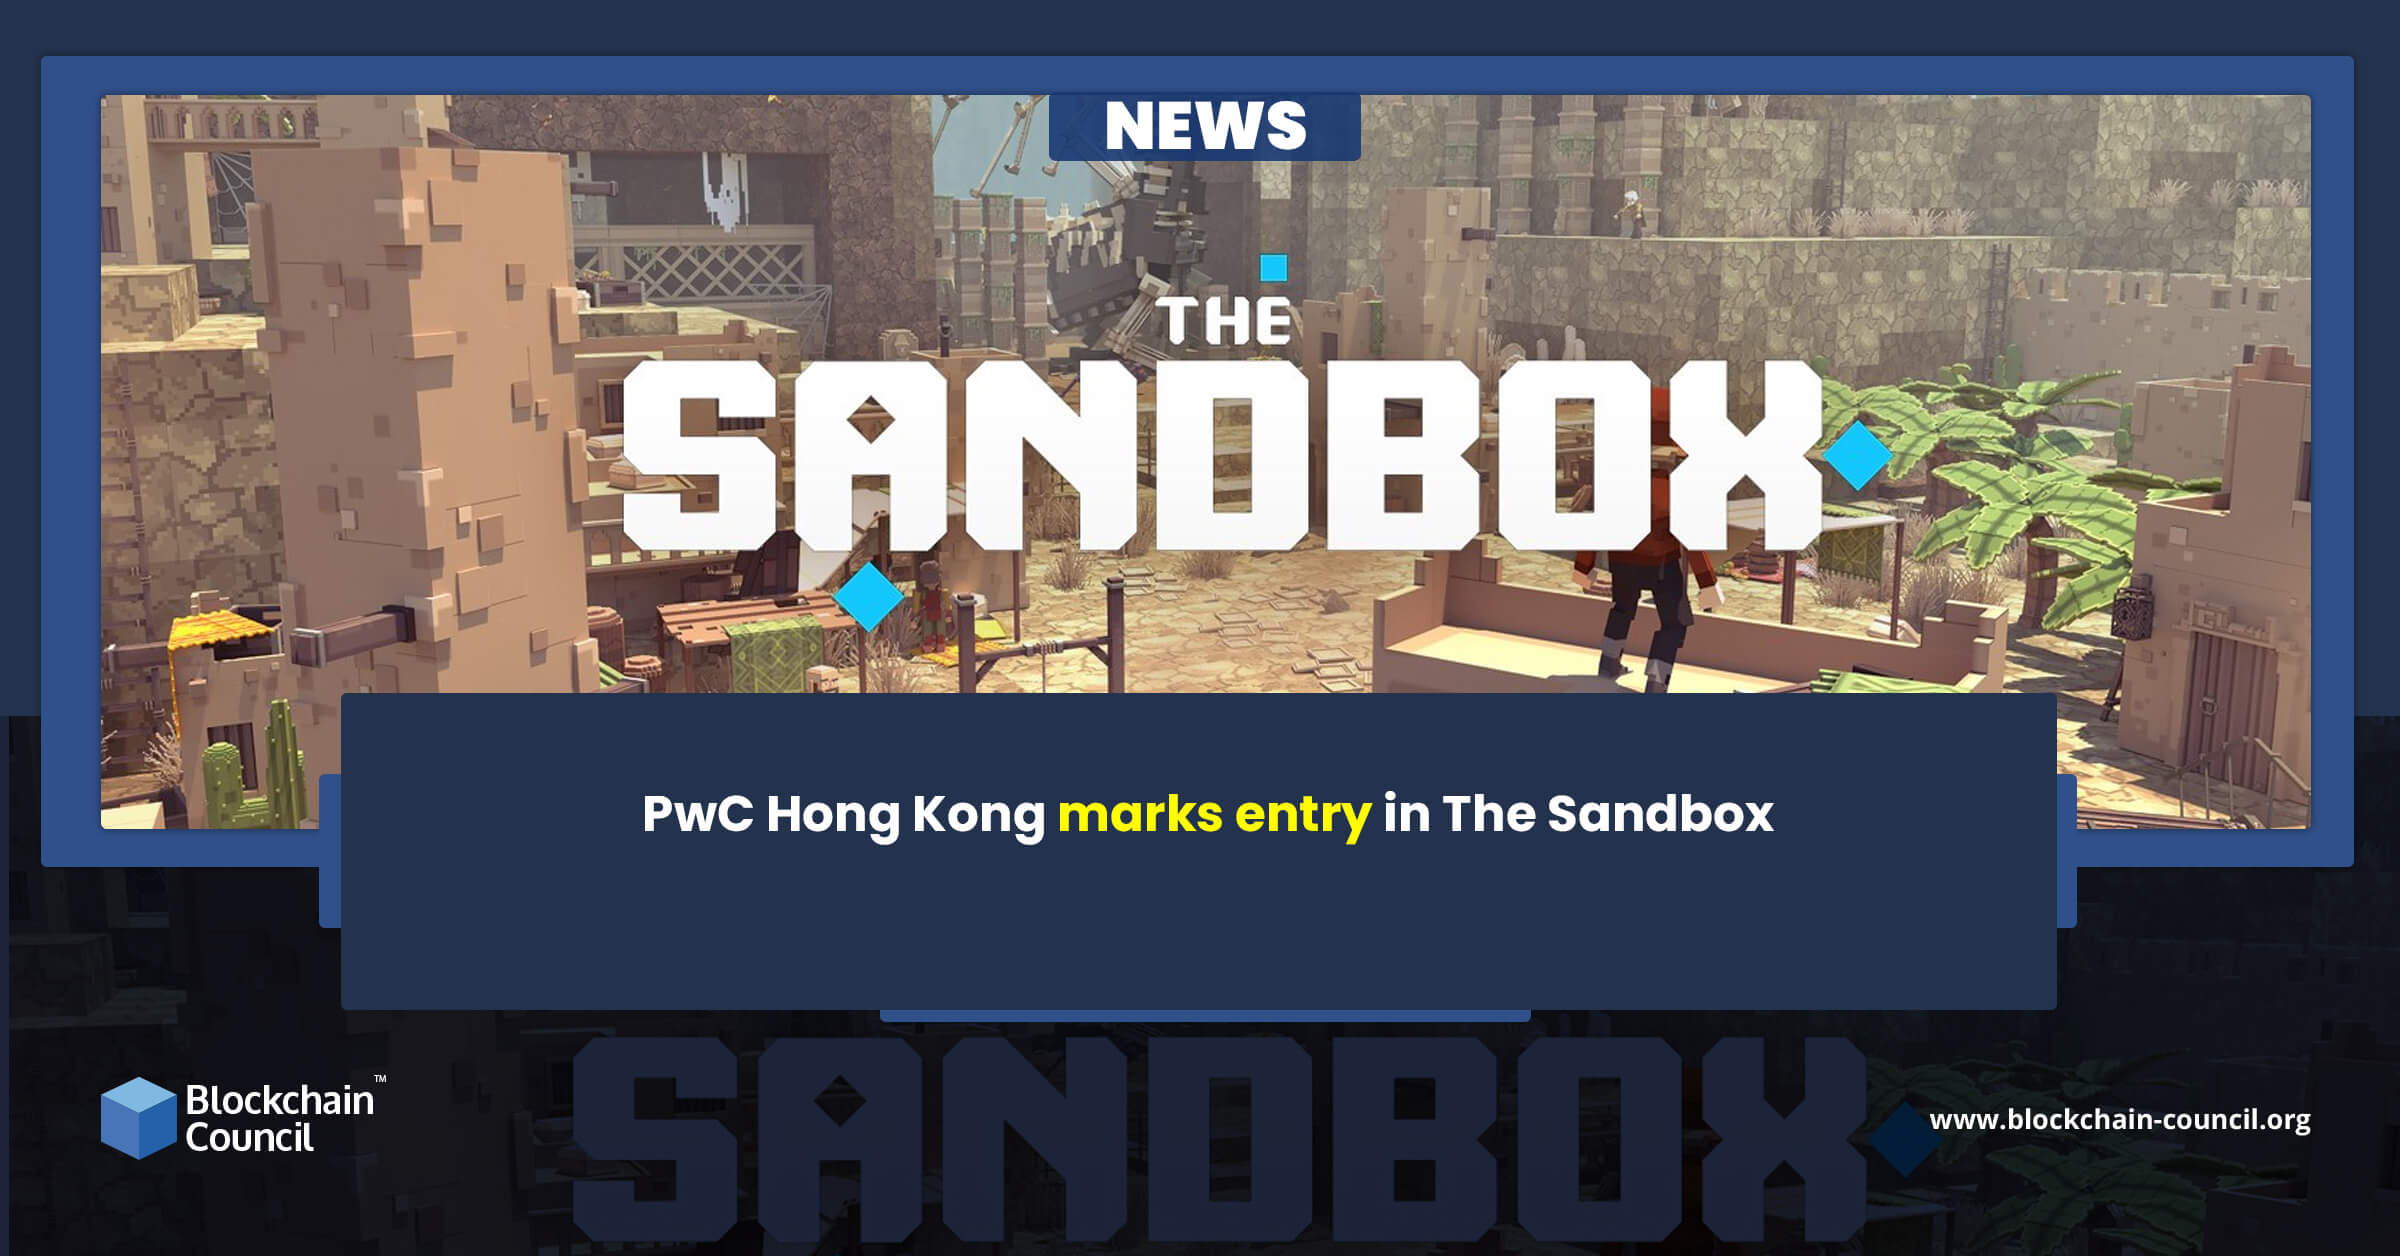 PwC Hong Kong marks entry in The Sandbox news emailer